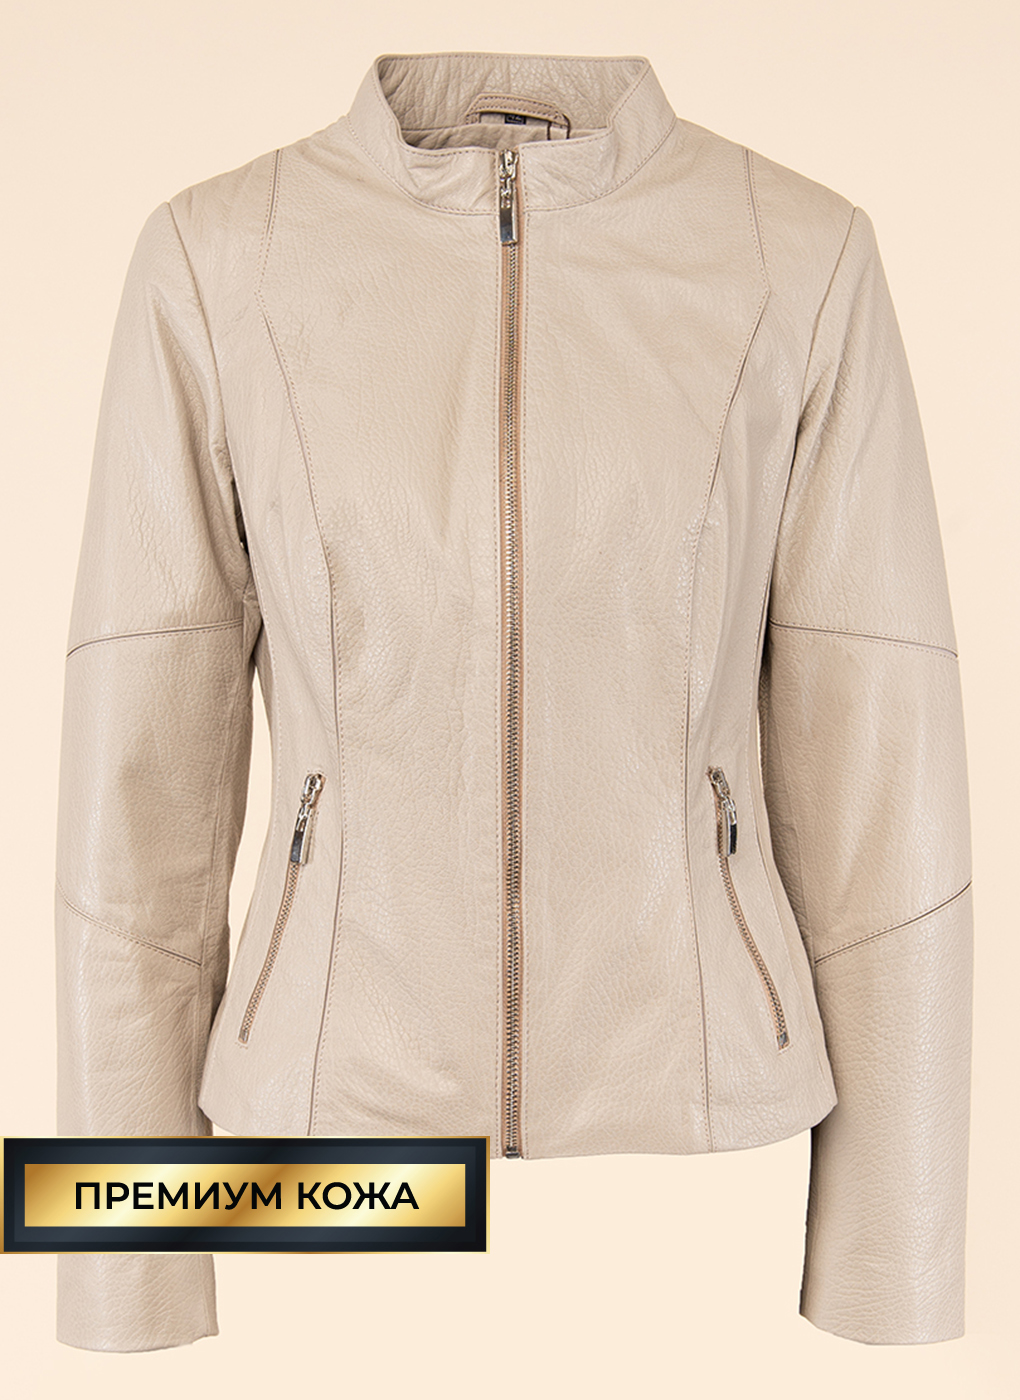 Кожаная куртка женская Каляев 47482 бежевая 42 RU